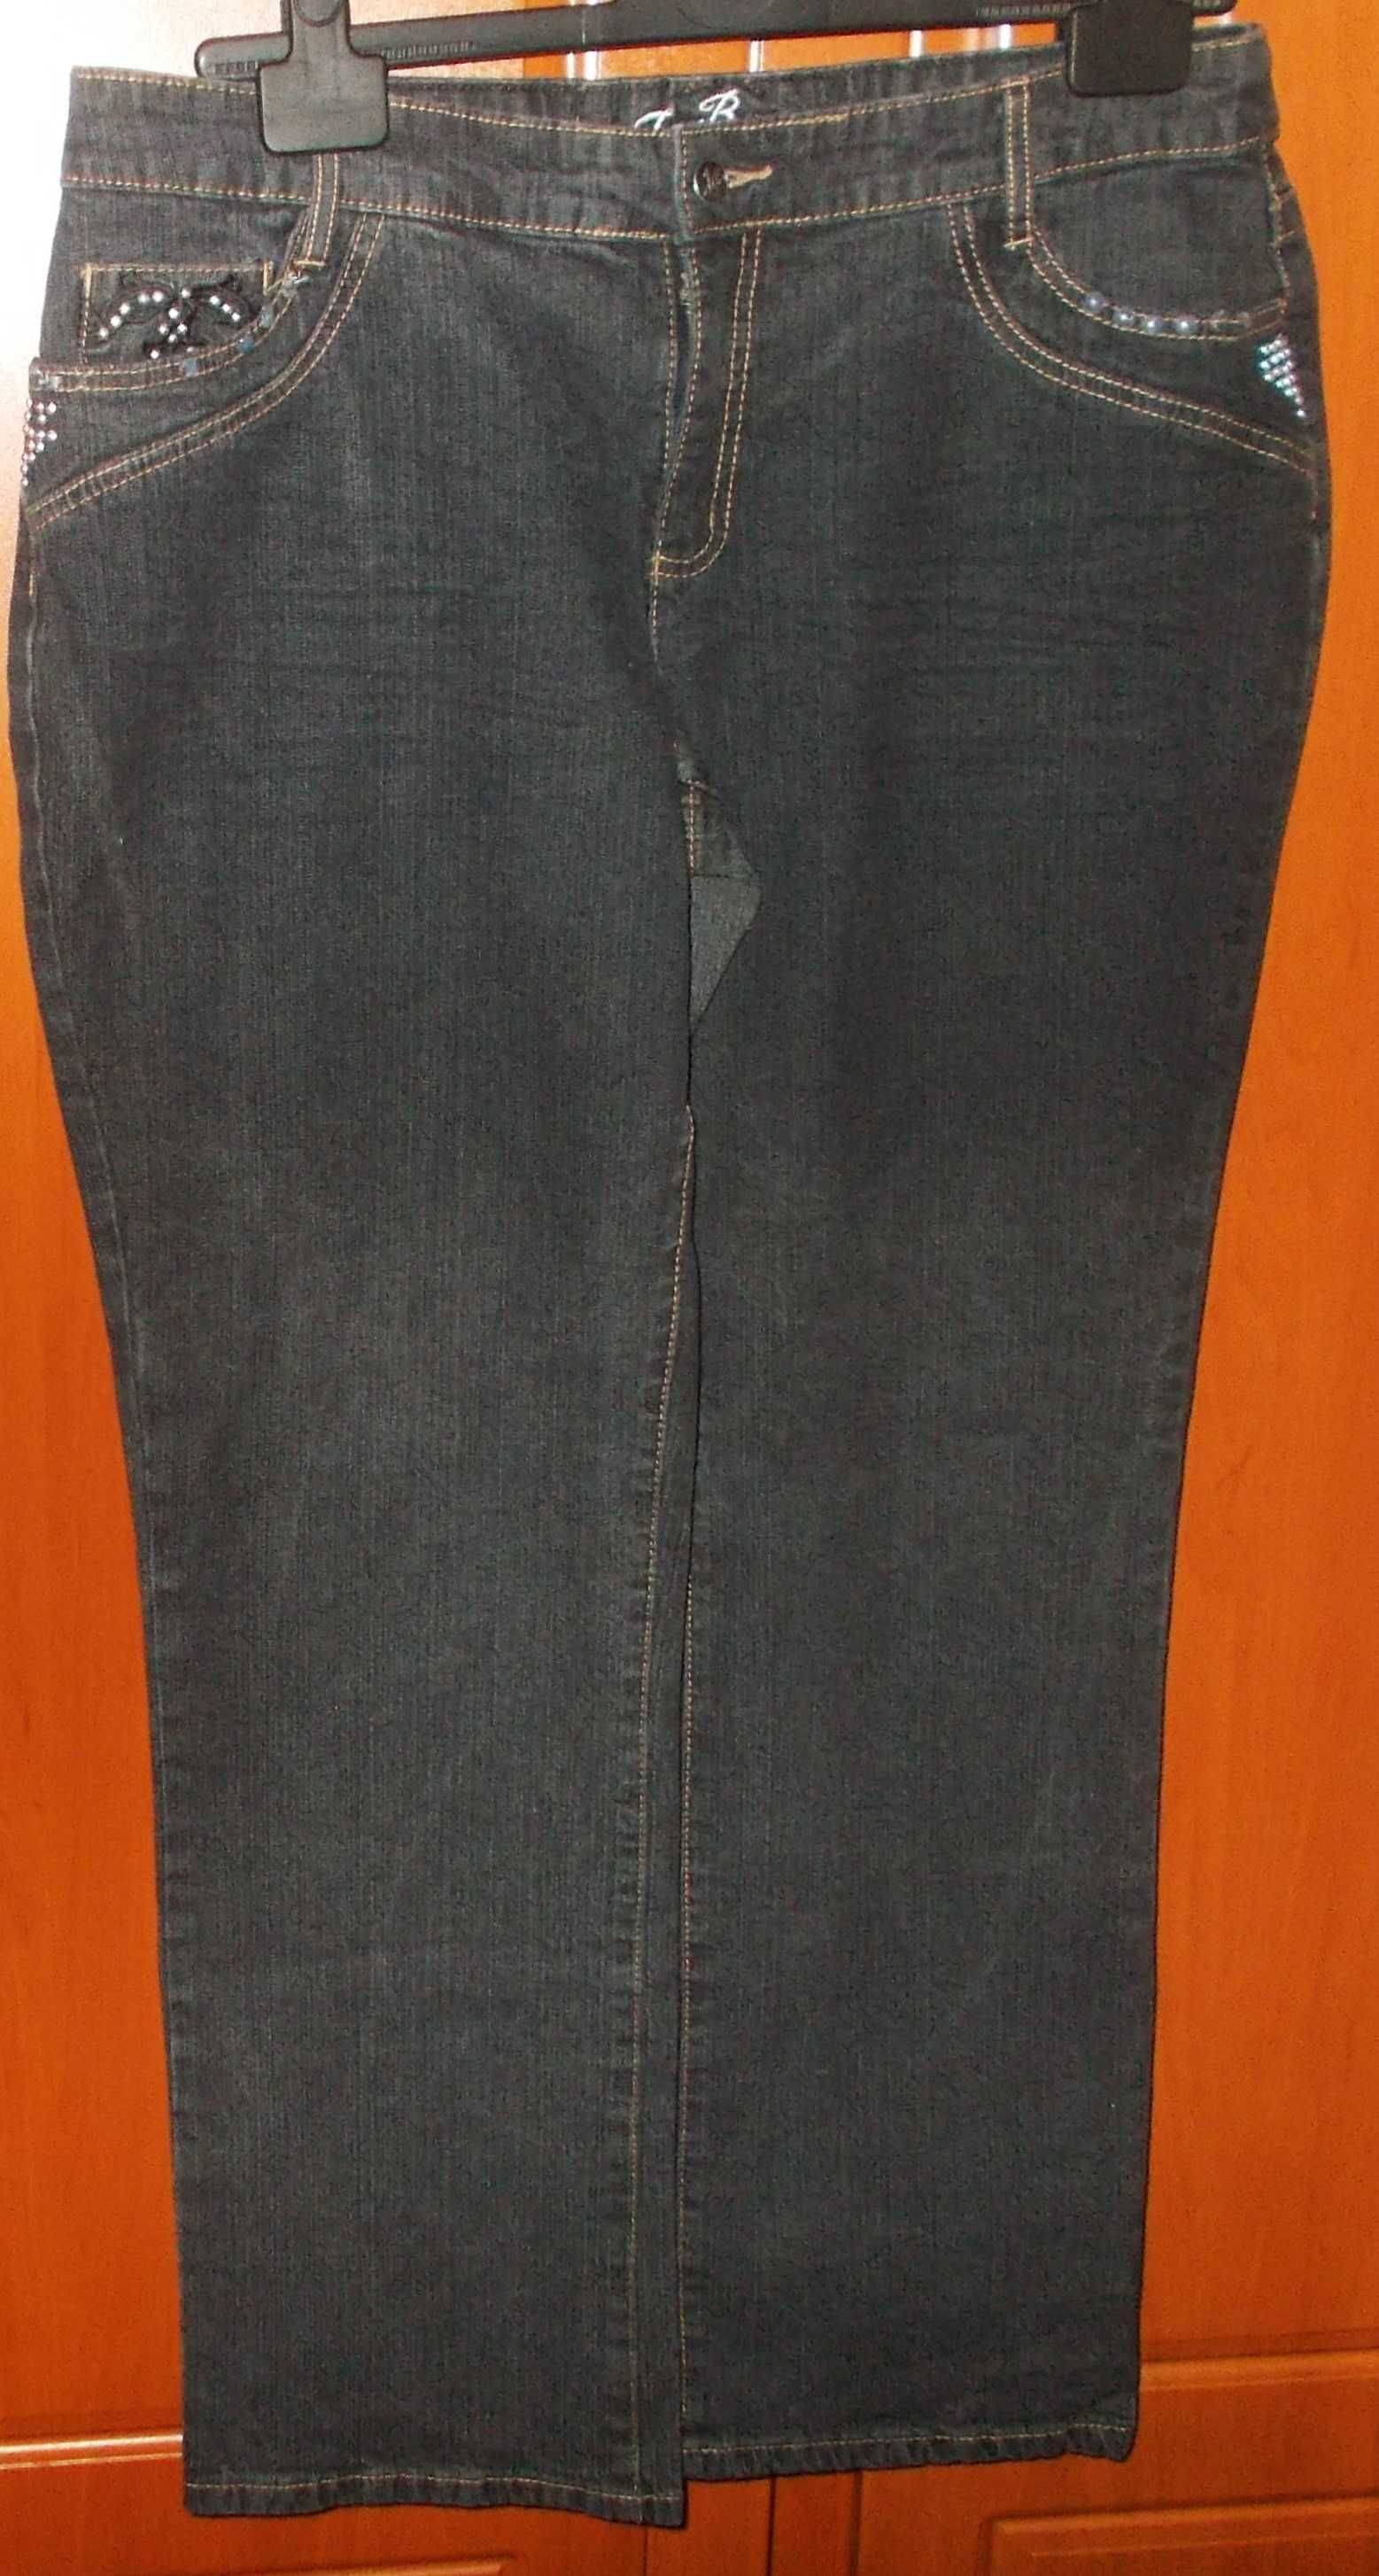 Spodnie jeansy stylowe rock black zdobione haft dżety XXL Joe Browns